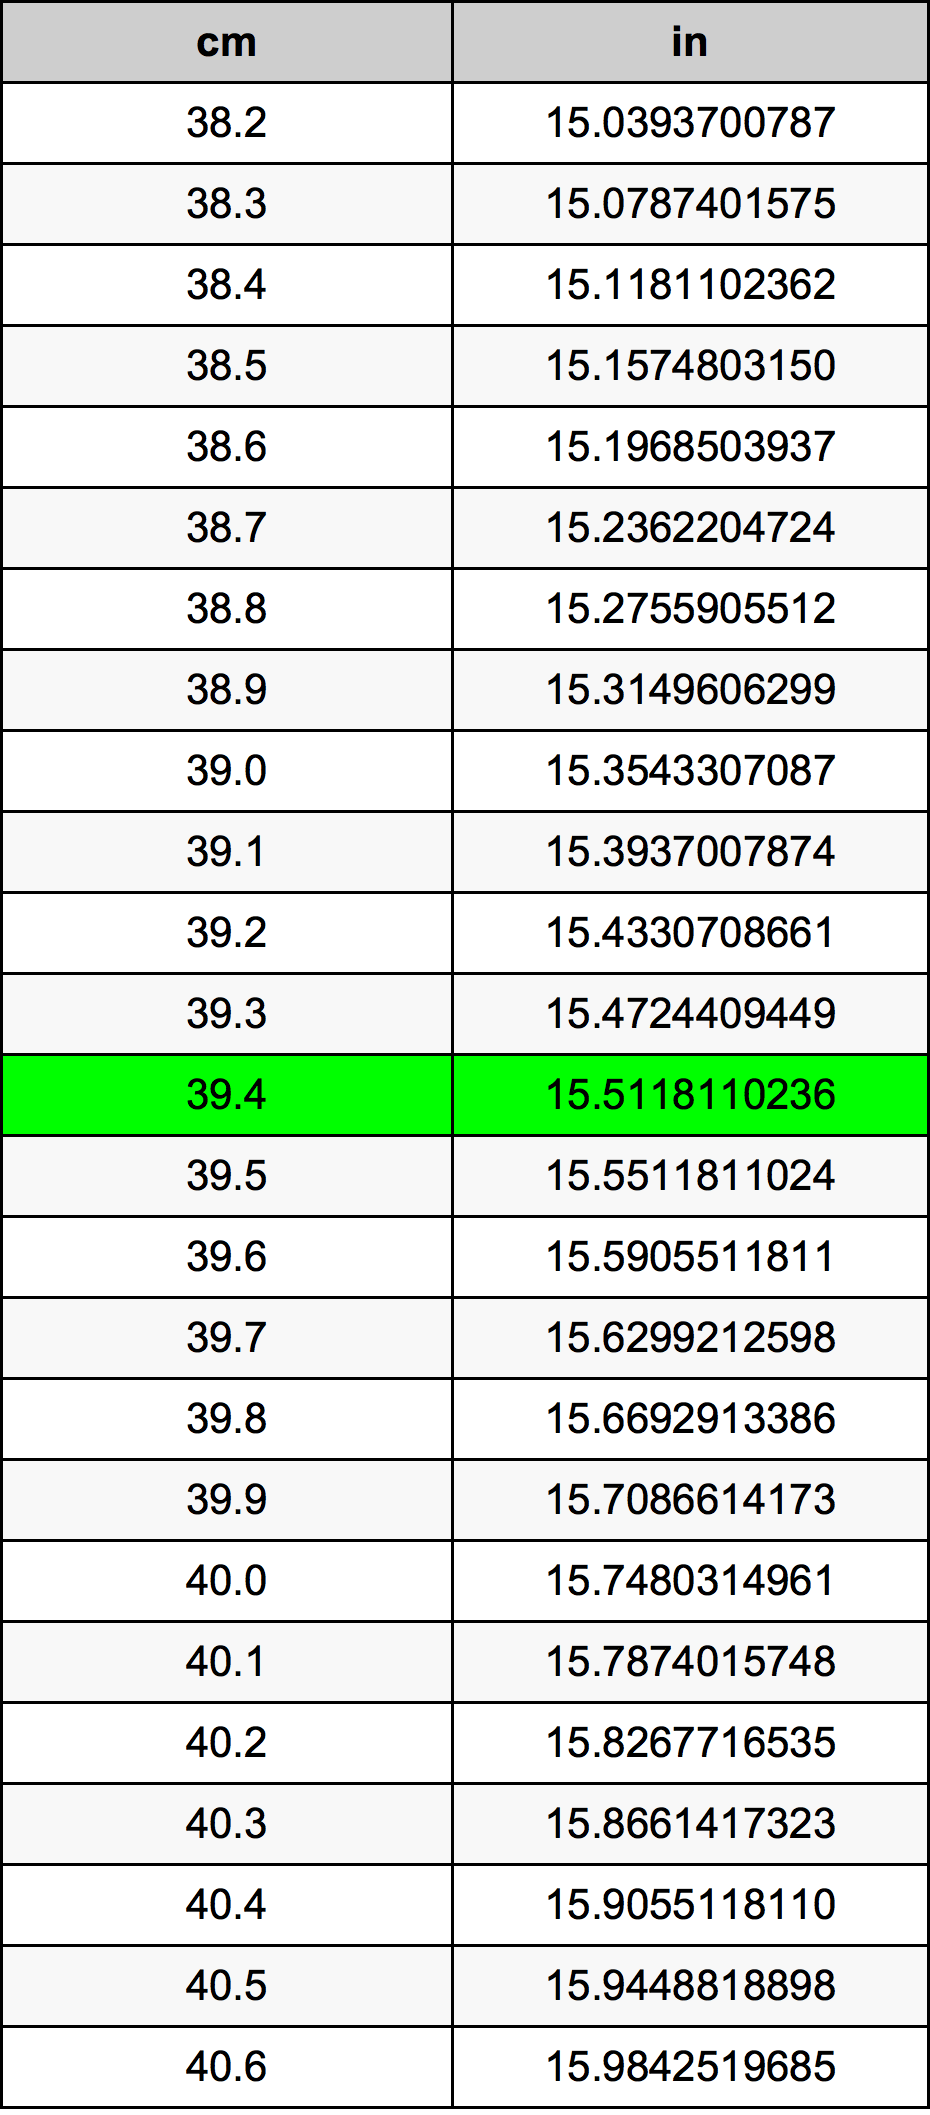 39.4 Centiméter átszámítási táblázat